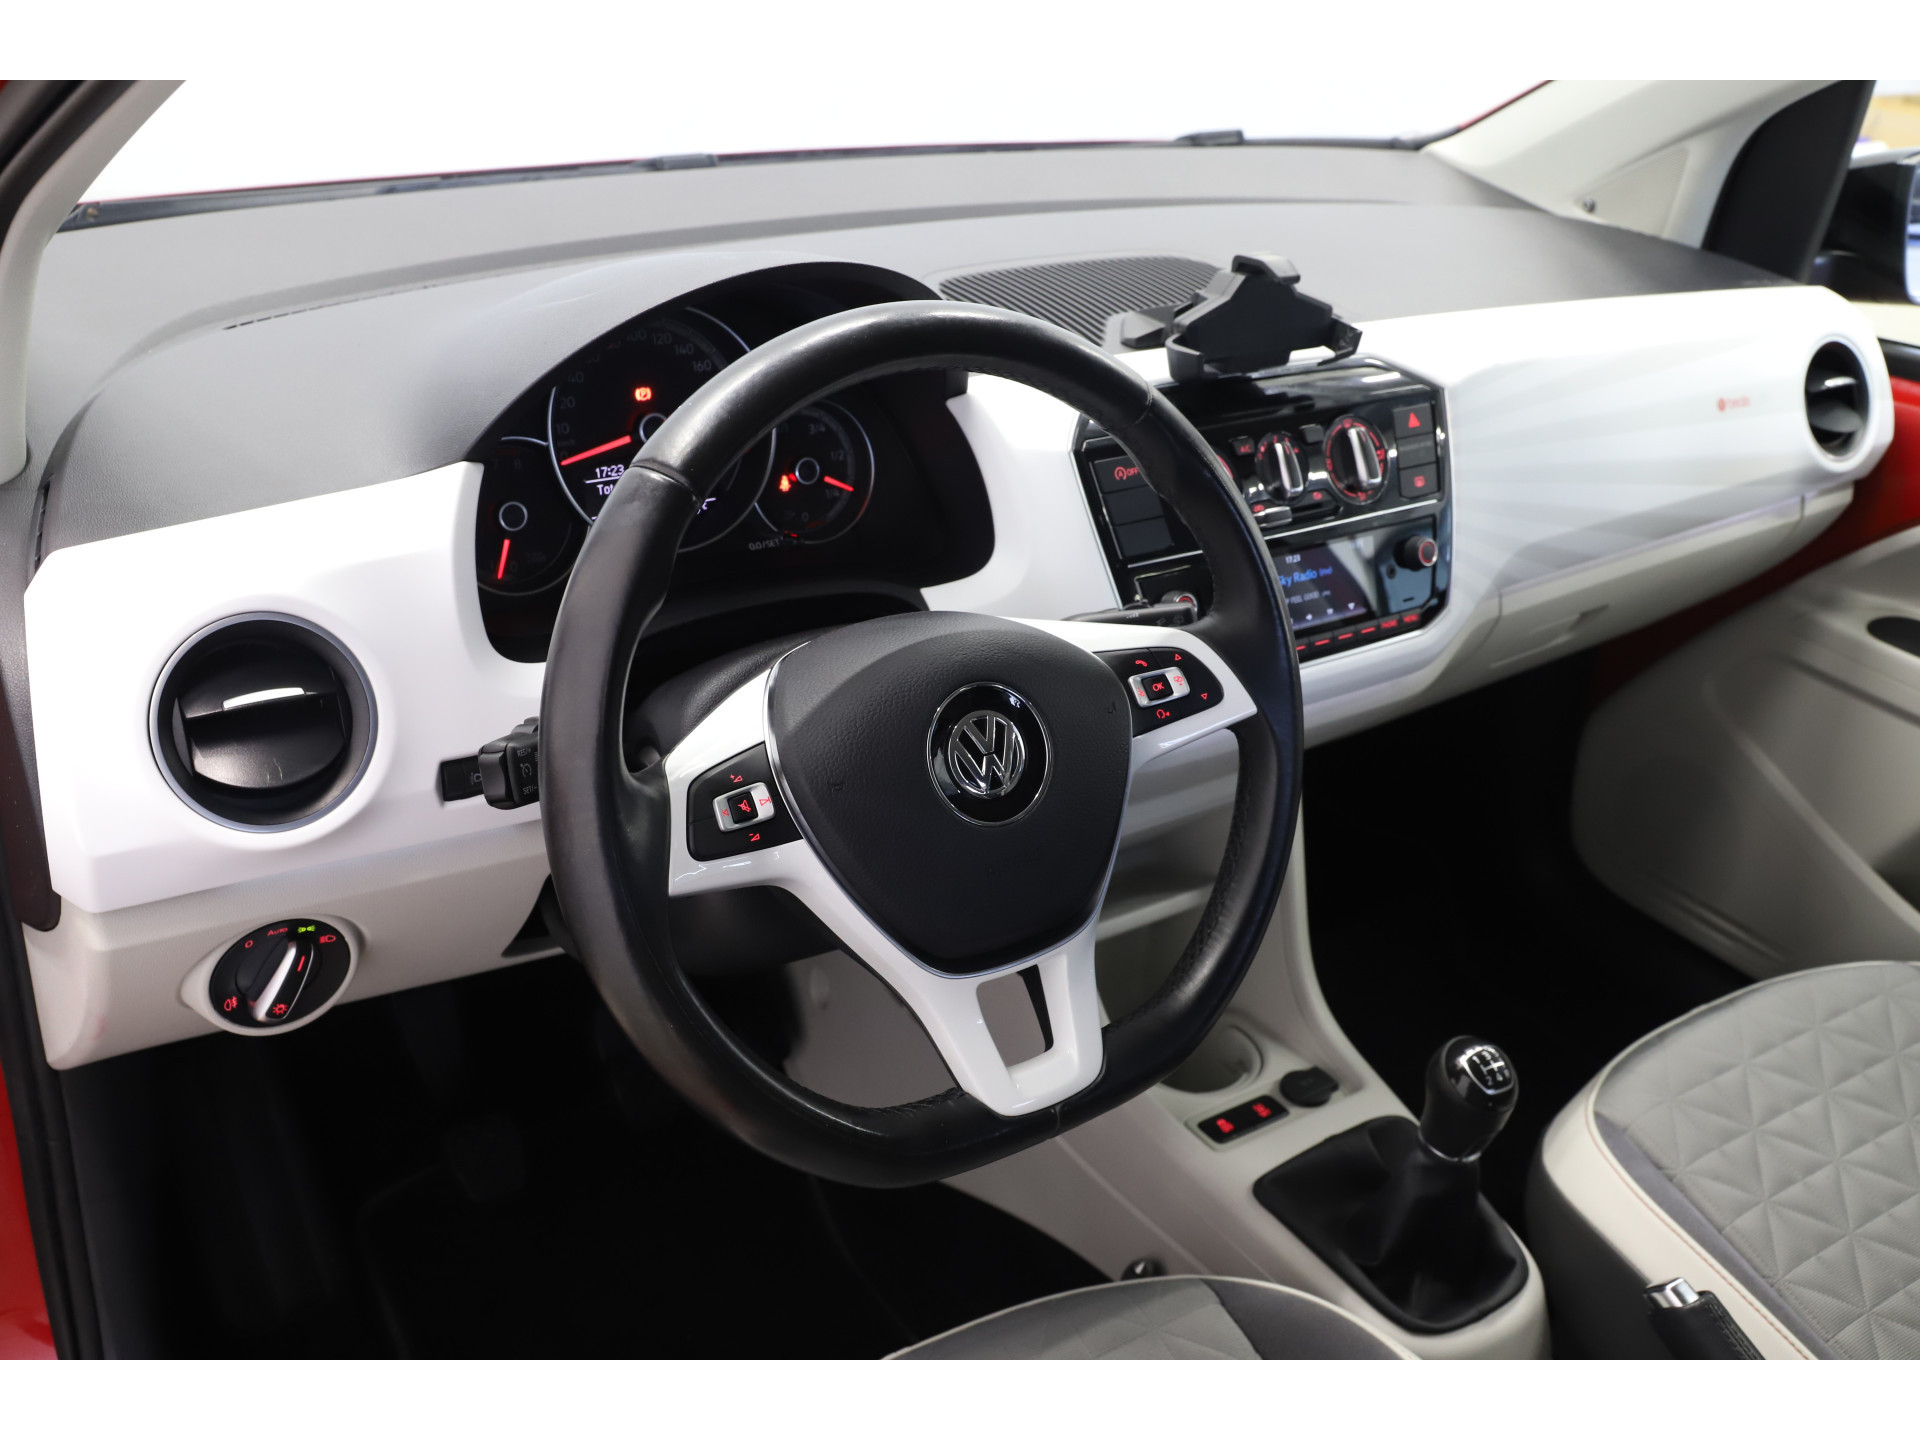 Volkswagen - up! 1.0 BMT up! beats - 2017